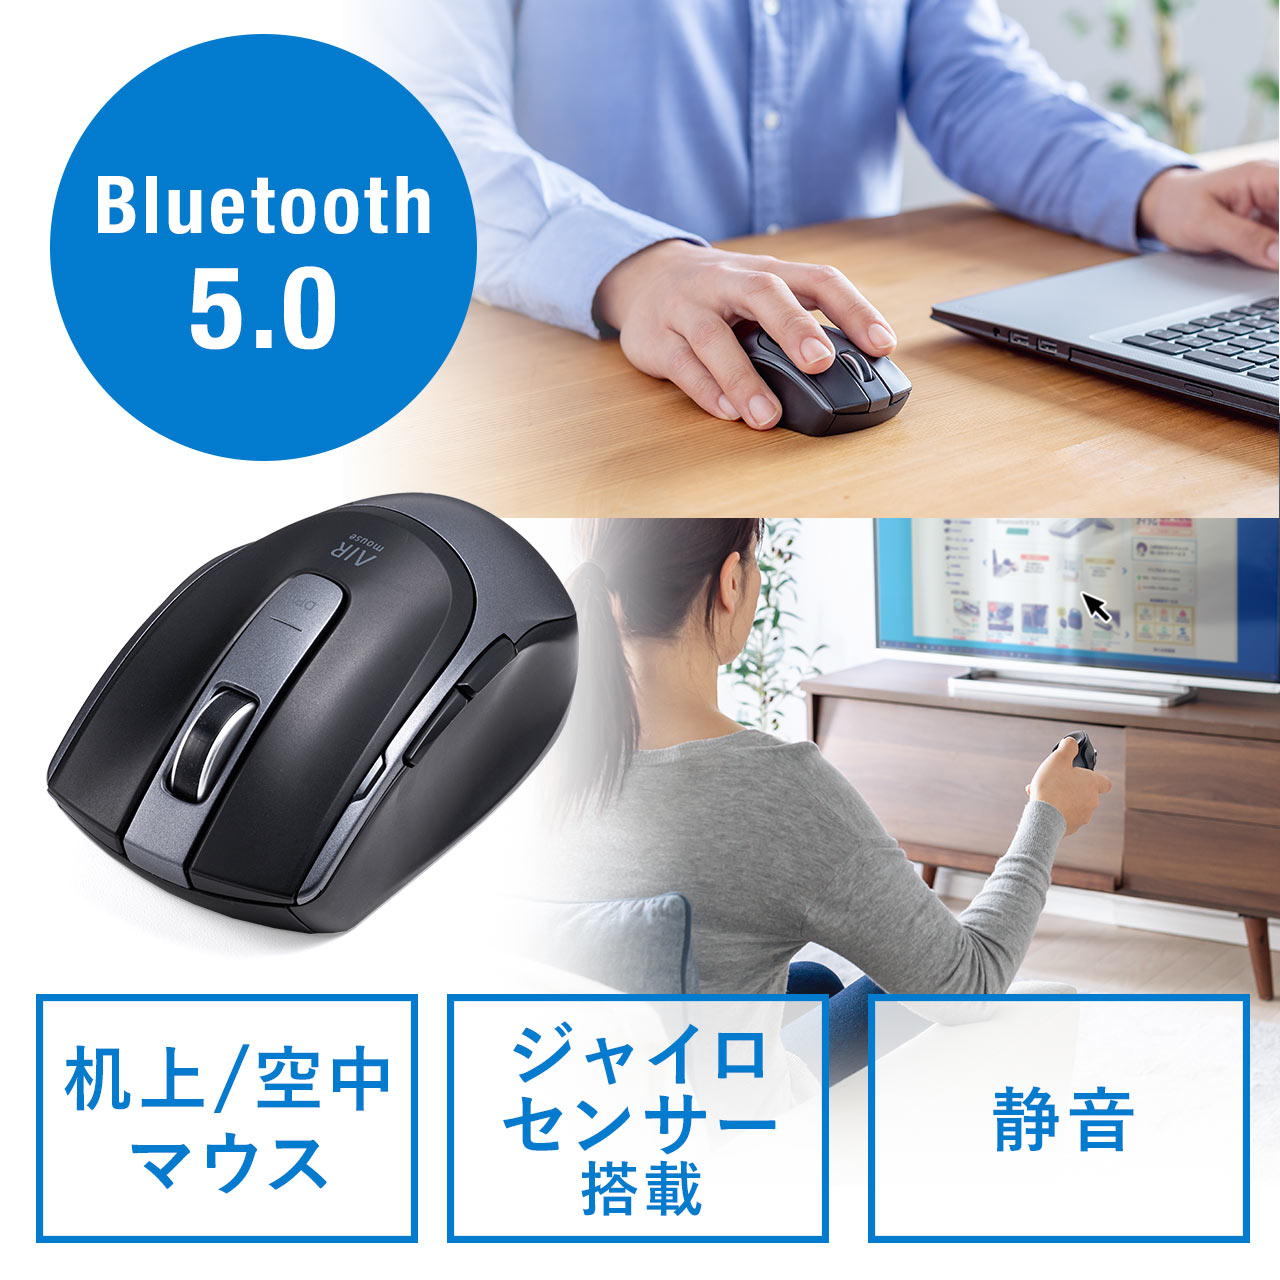 Bluetoothマウス エアマウス 空中マウス ジャイロセンサー 小型マウス プレゼンマウス カウント切り替え Ipad Iphone 400 Mabt132の販売商品 通販ならサンワダイレクト